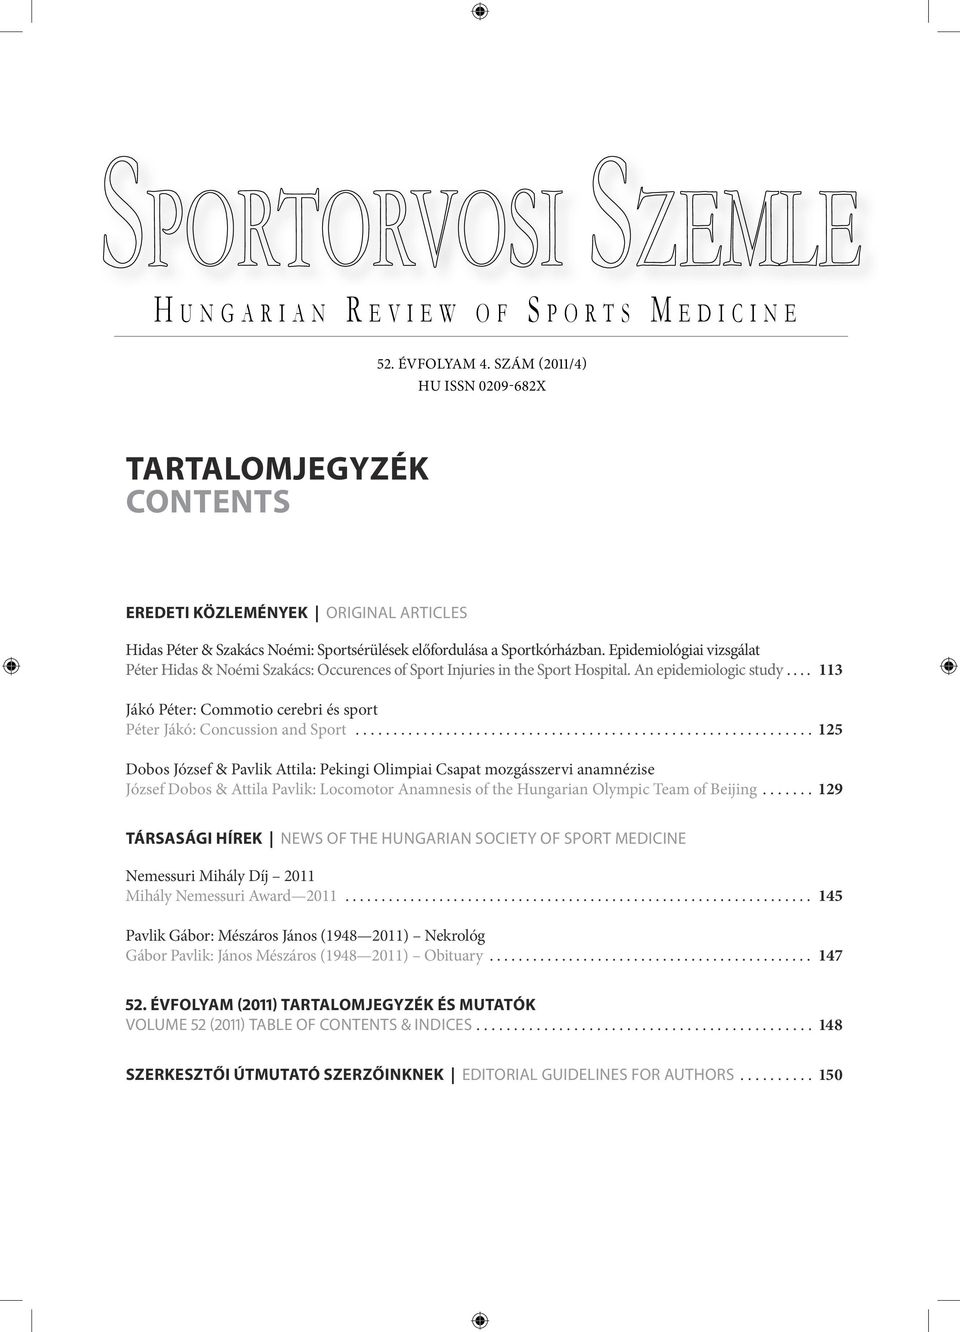 Epidemiológiai vizsgálat Péter Hidas & Noémi Szakács: Occurences of Sport Injuries in the Sport Hospital. An epidemiologic study.